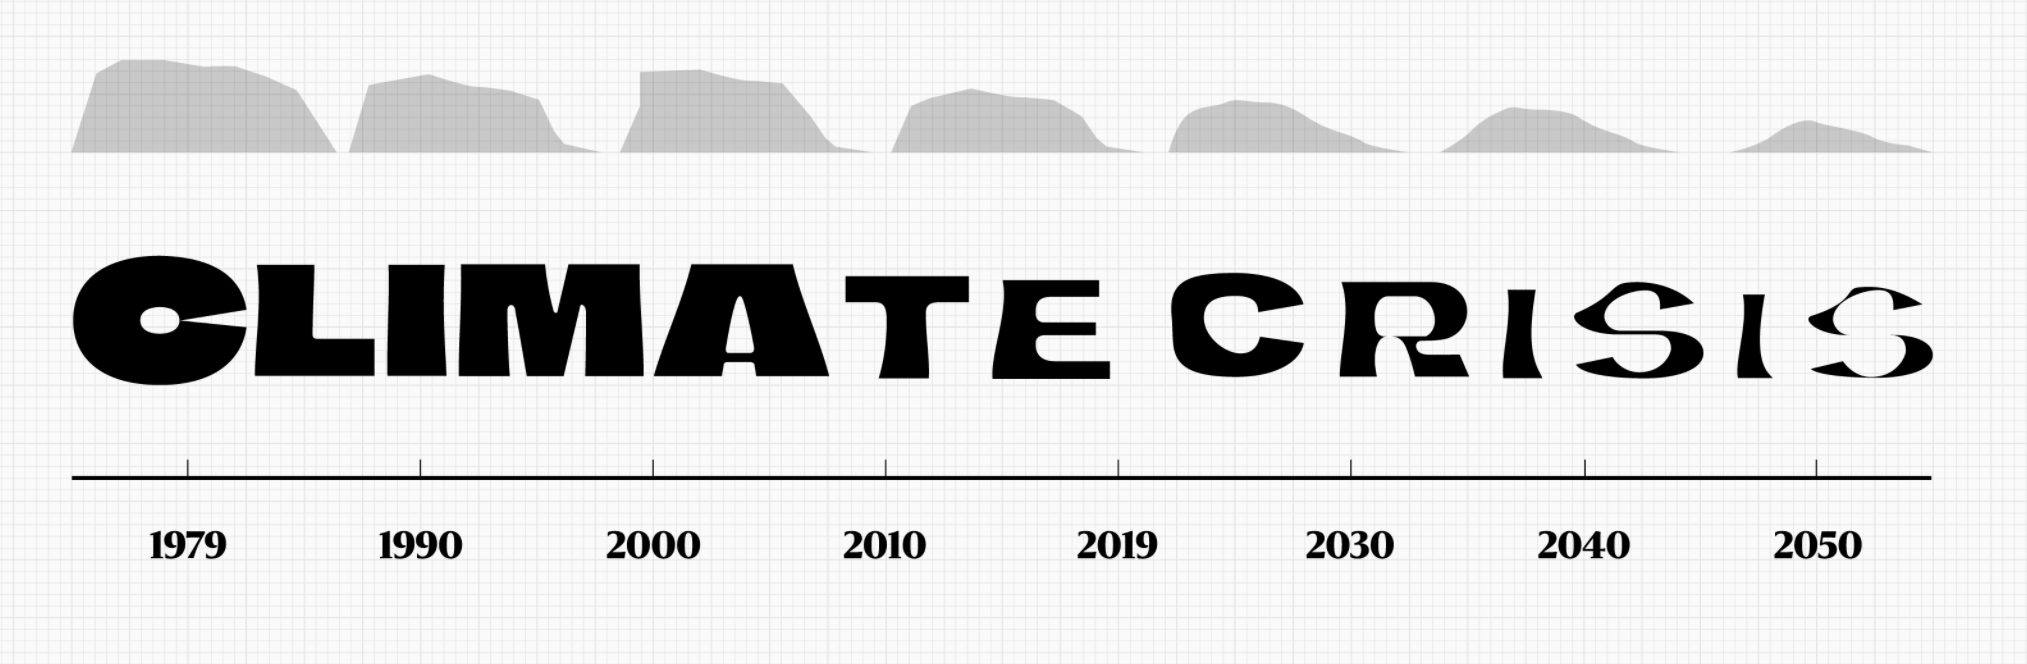 Image montrant l'évolution des caractères de la typo Climate Crisis de 1979 très bolf à 2050 toute fondue